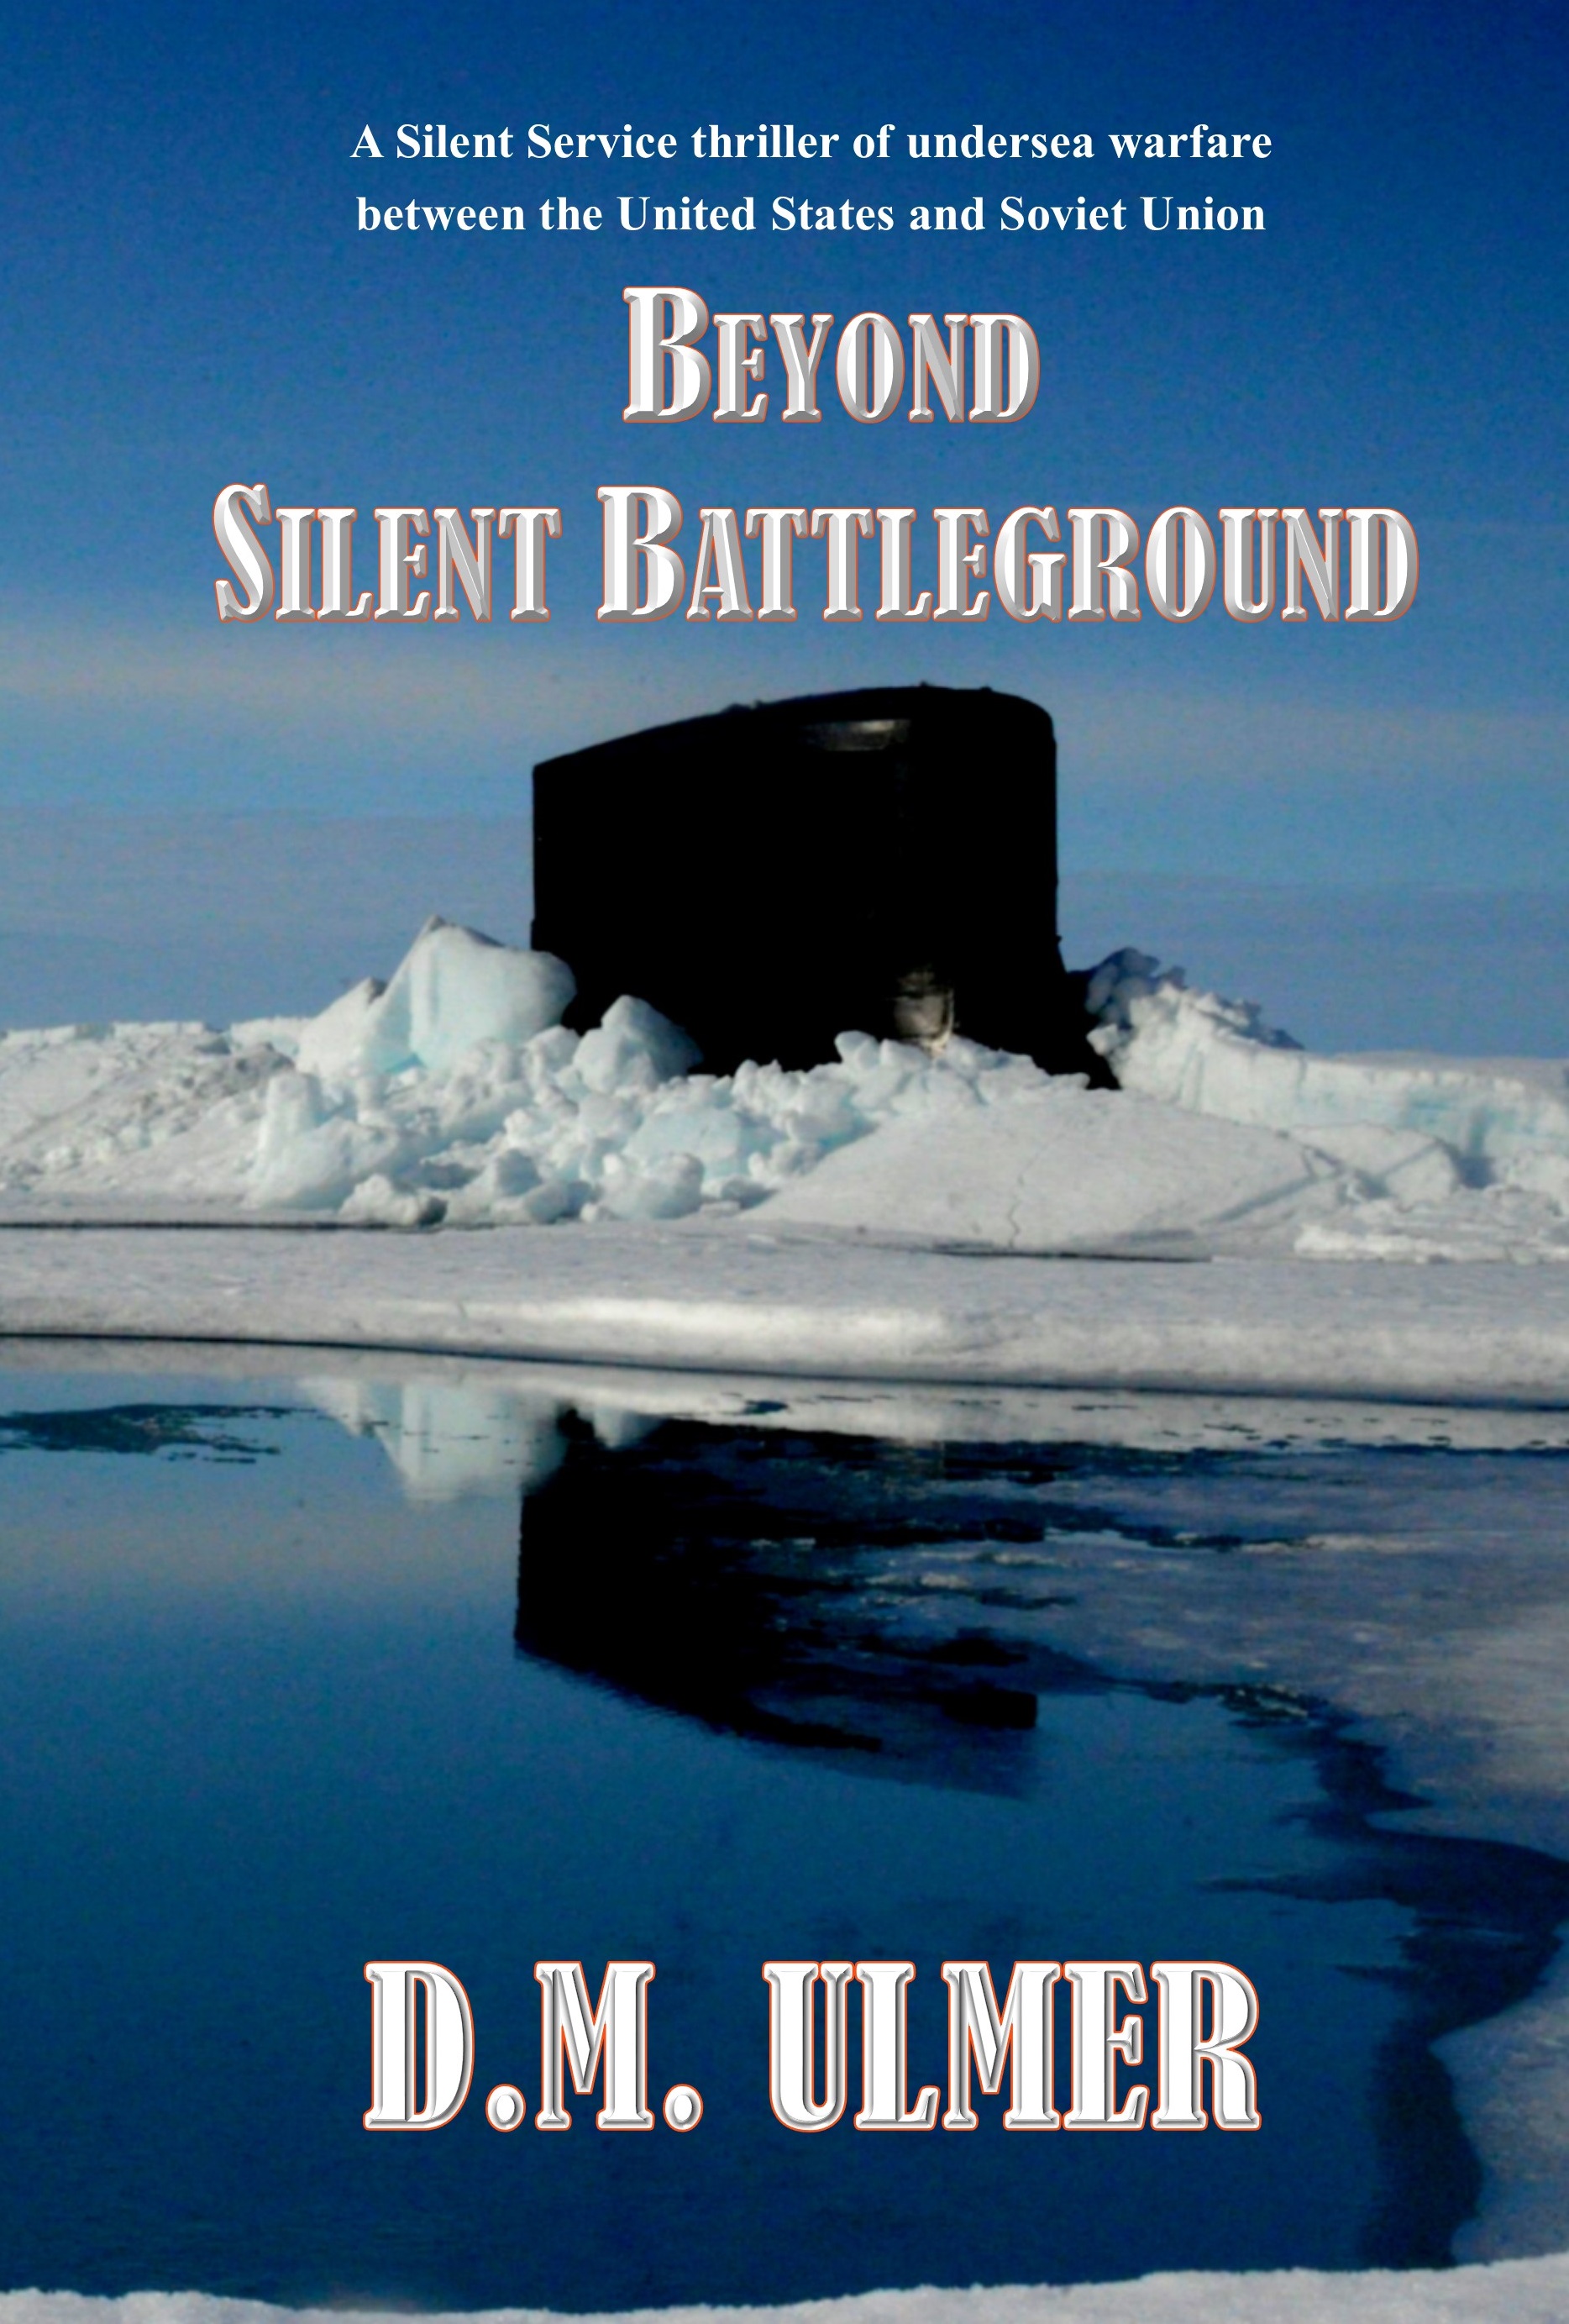 Beyond Silent Battleground by D.M. Ulmer